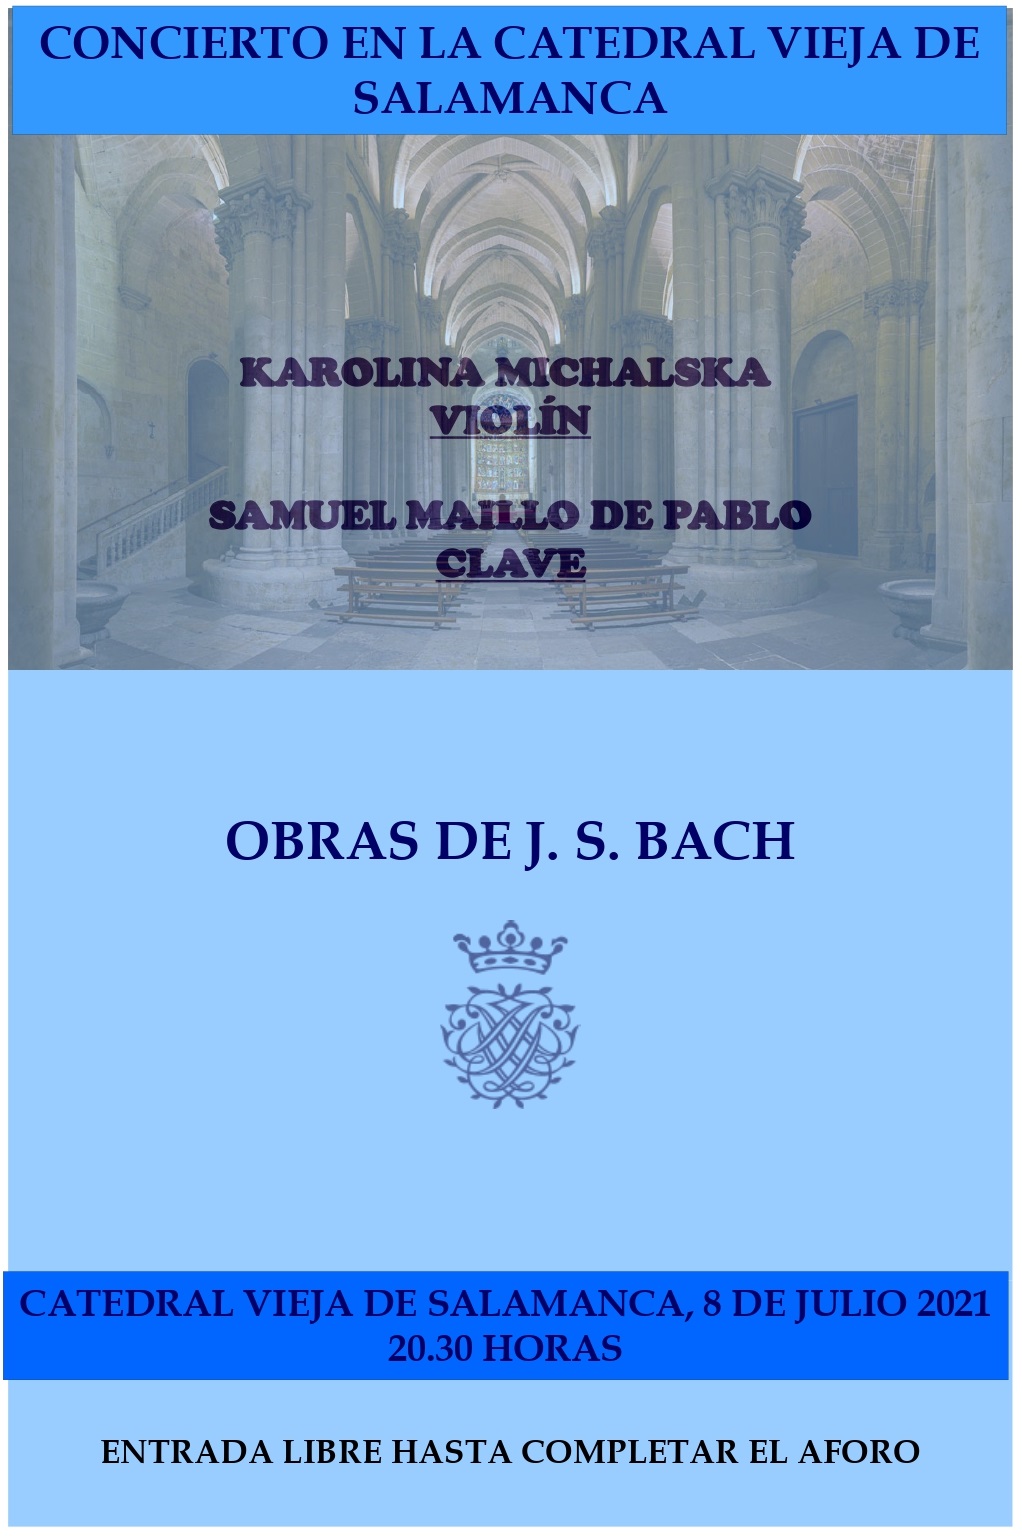 Concierto de violín y clave en la Catedral Vieja